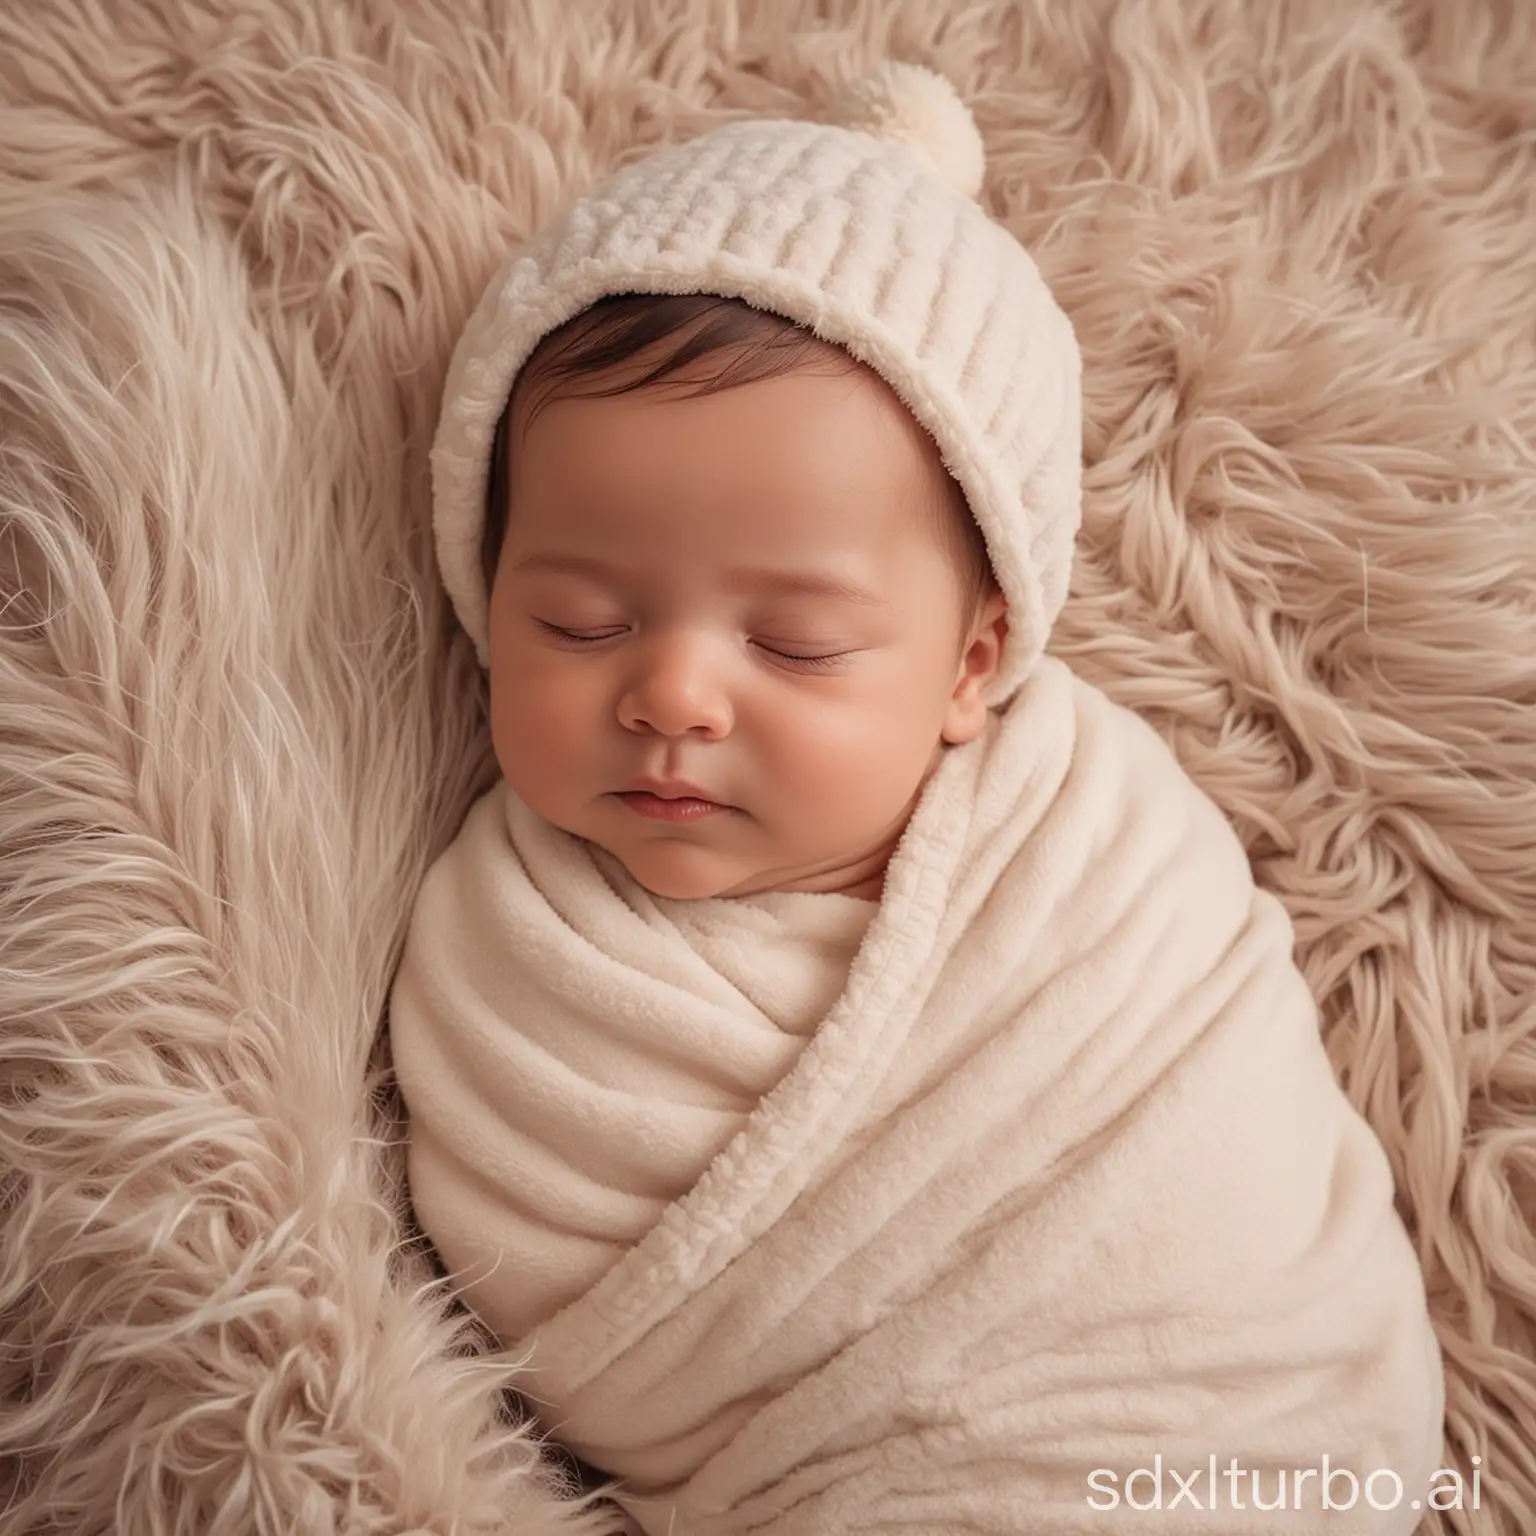 Peaceful-Baby-Sleeping-on-Fluffy-Blanket-in-Cute-Onesie